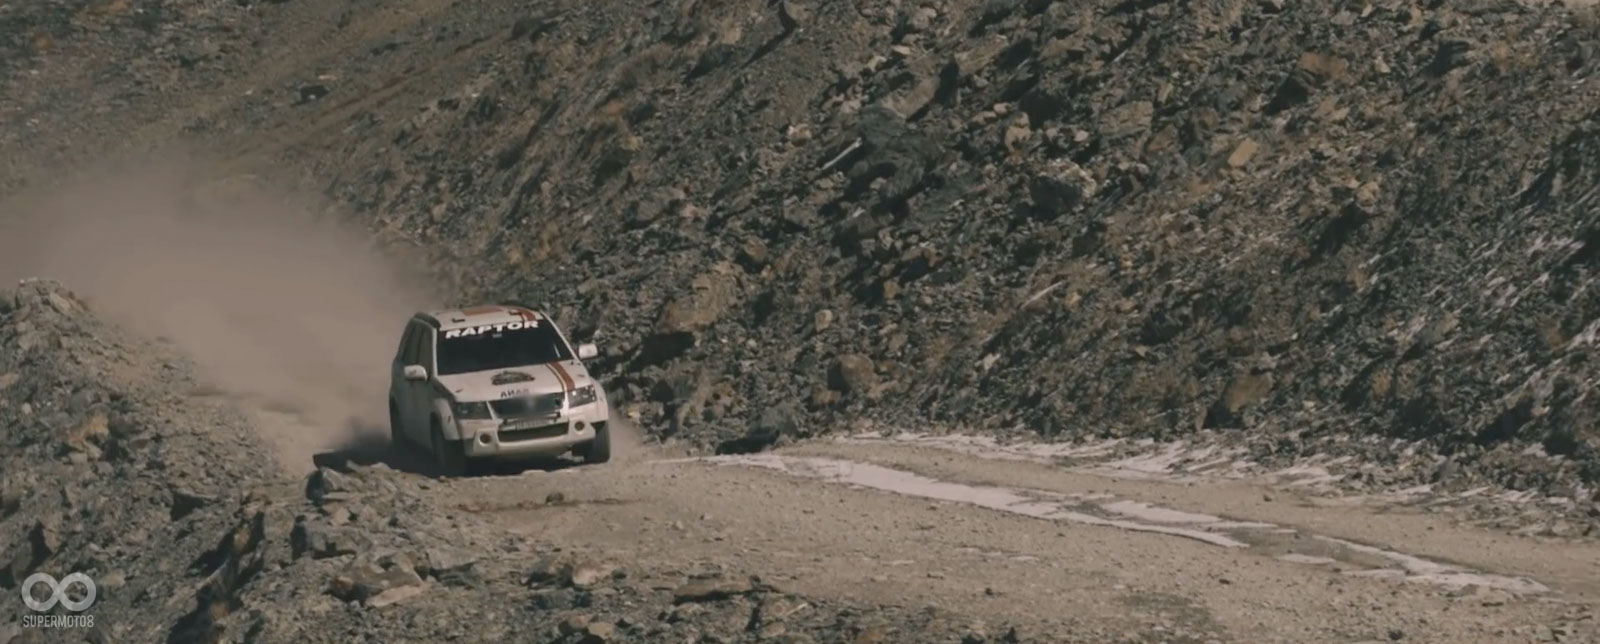 Suresh Rana則是在影片中駕駛拉力賽車的駕駛